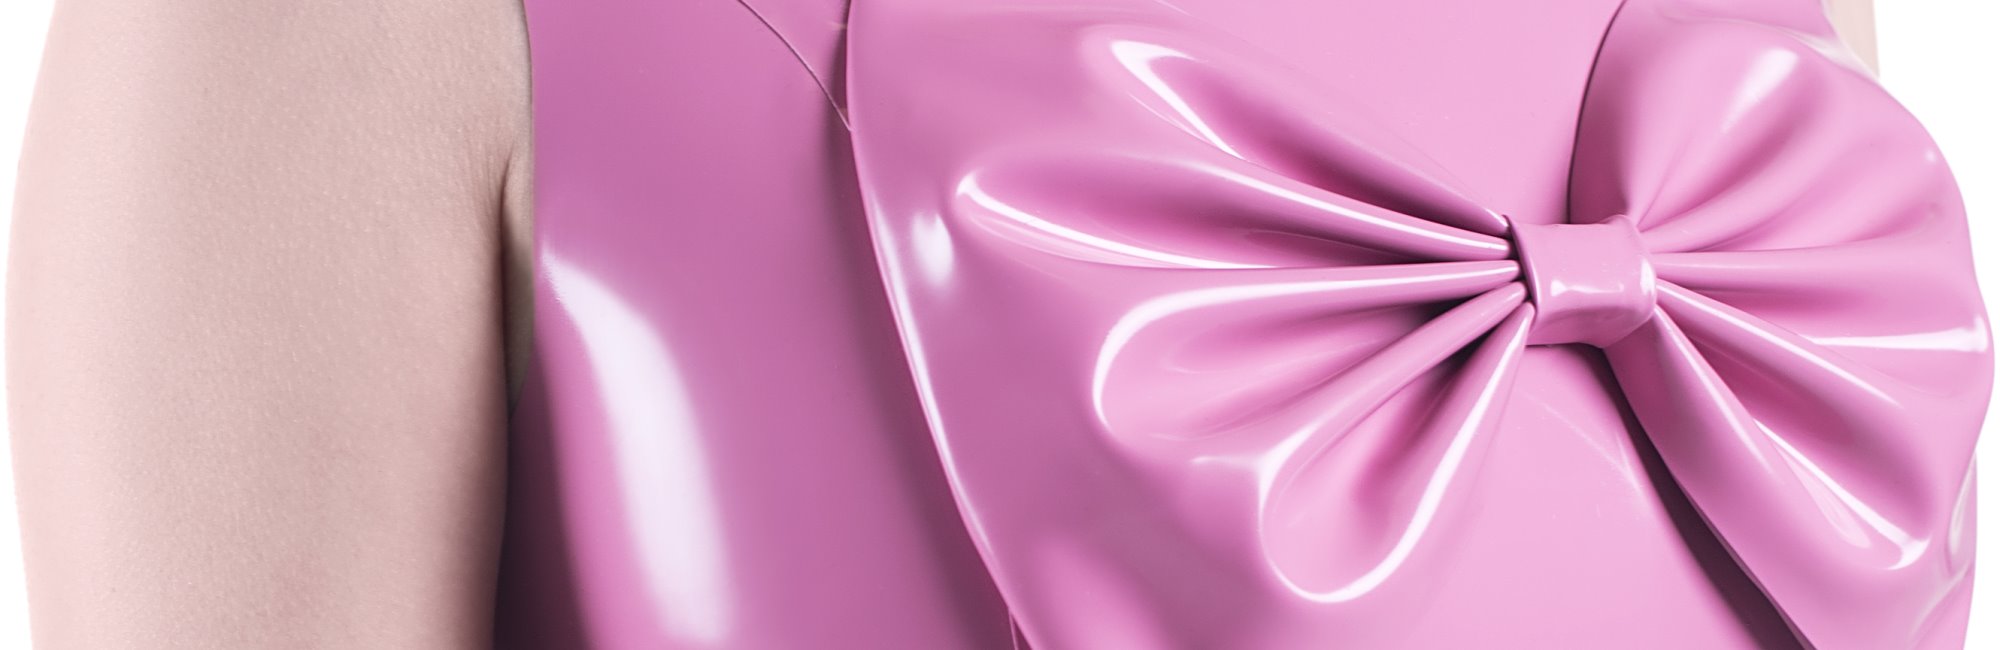 Detailansicht einer großen Schleife aus pinkem Latex.